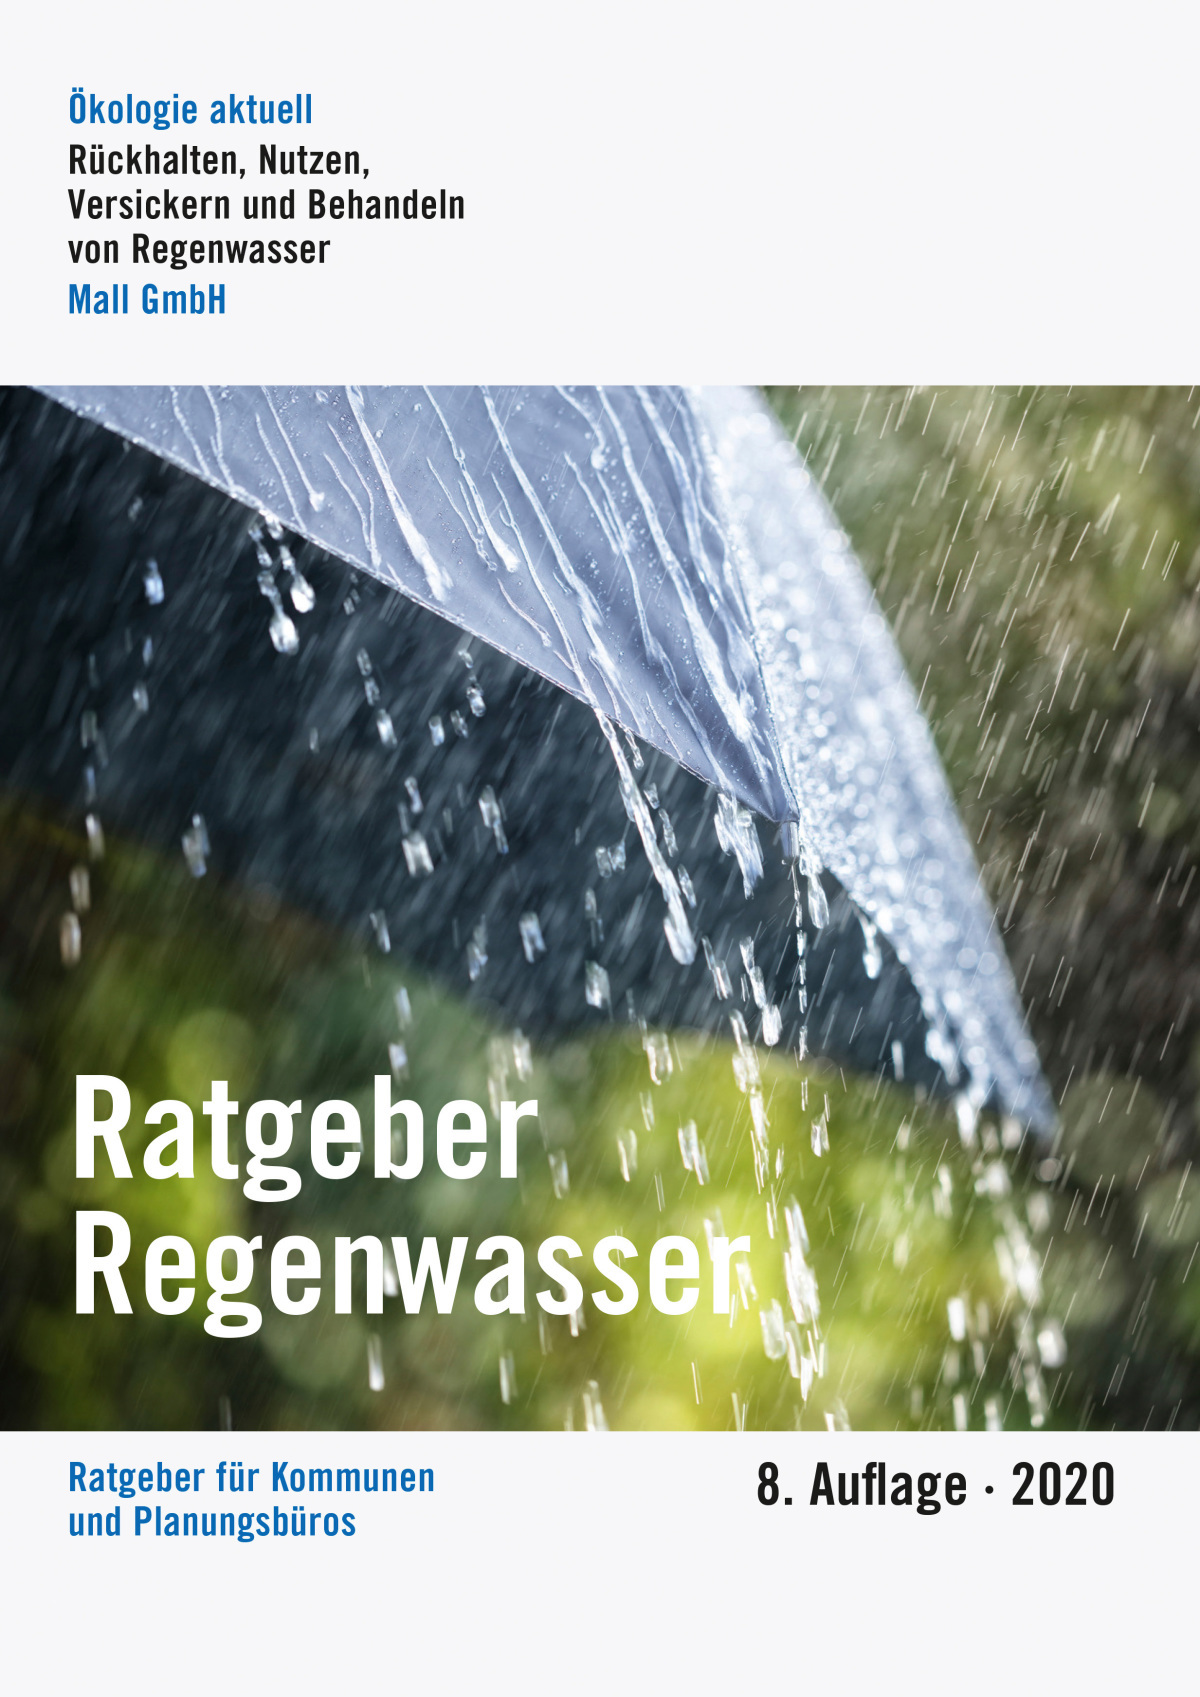 Der Ratgeber Regenwasser präsentiert auch in seiner 8. Auflage wieder die aktuell diskutierten Fachthemen der Siedlungswasserwirtschaft.